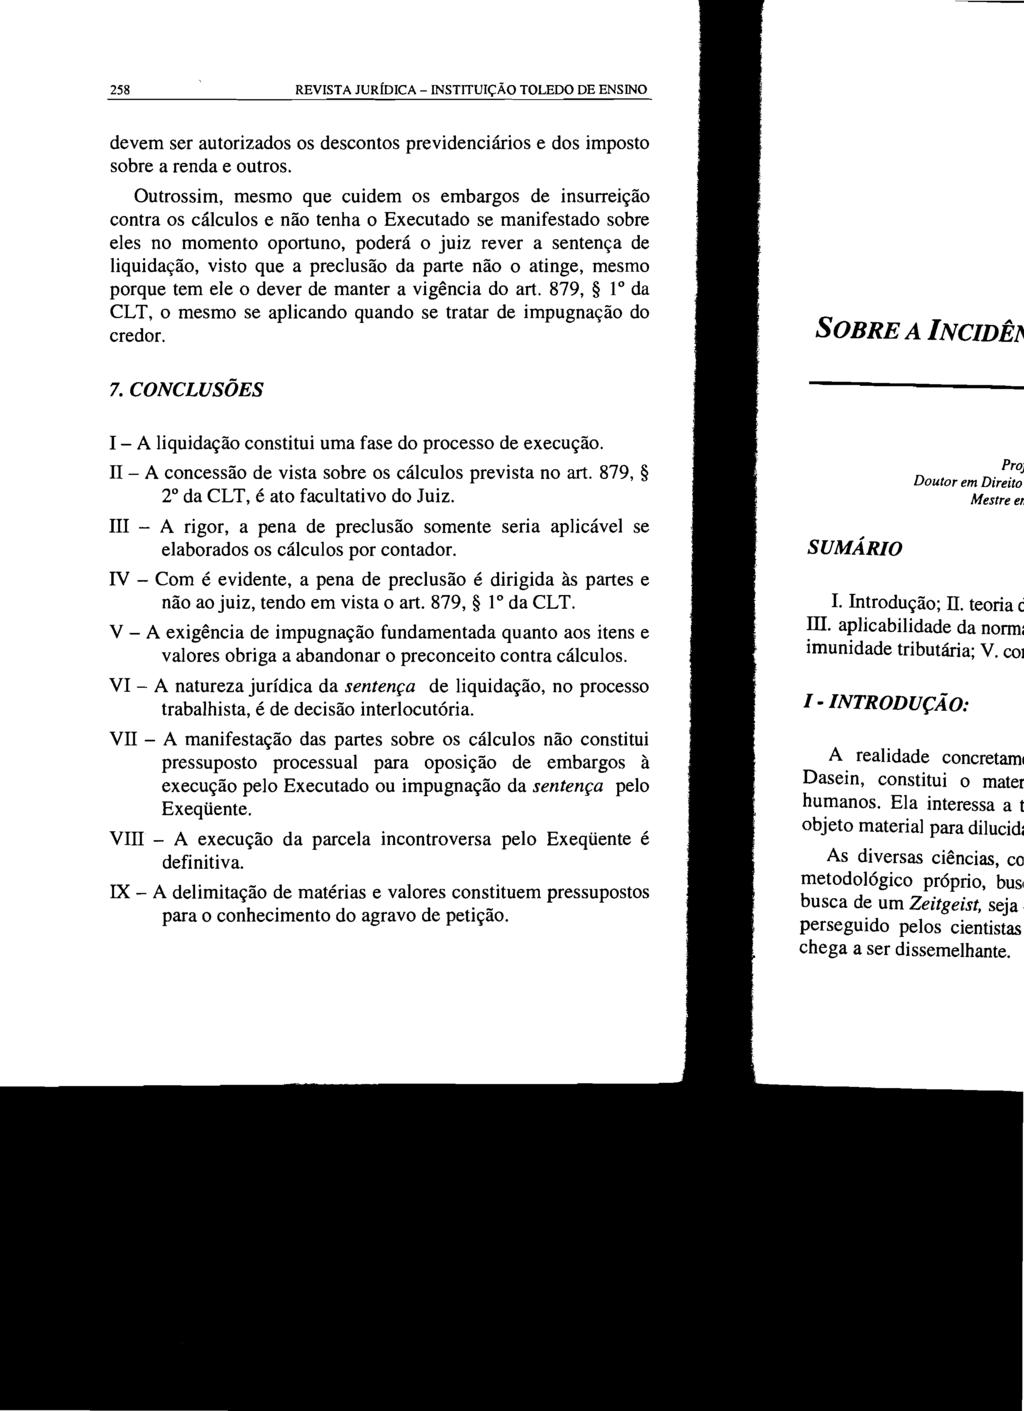 258 REVISTA JURÍDICA - INSTITUIÇÃO TOLEDO DE ENSINO devem ser autorizados os descontos previdenciários e dos imposto sobre a renda e outros.